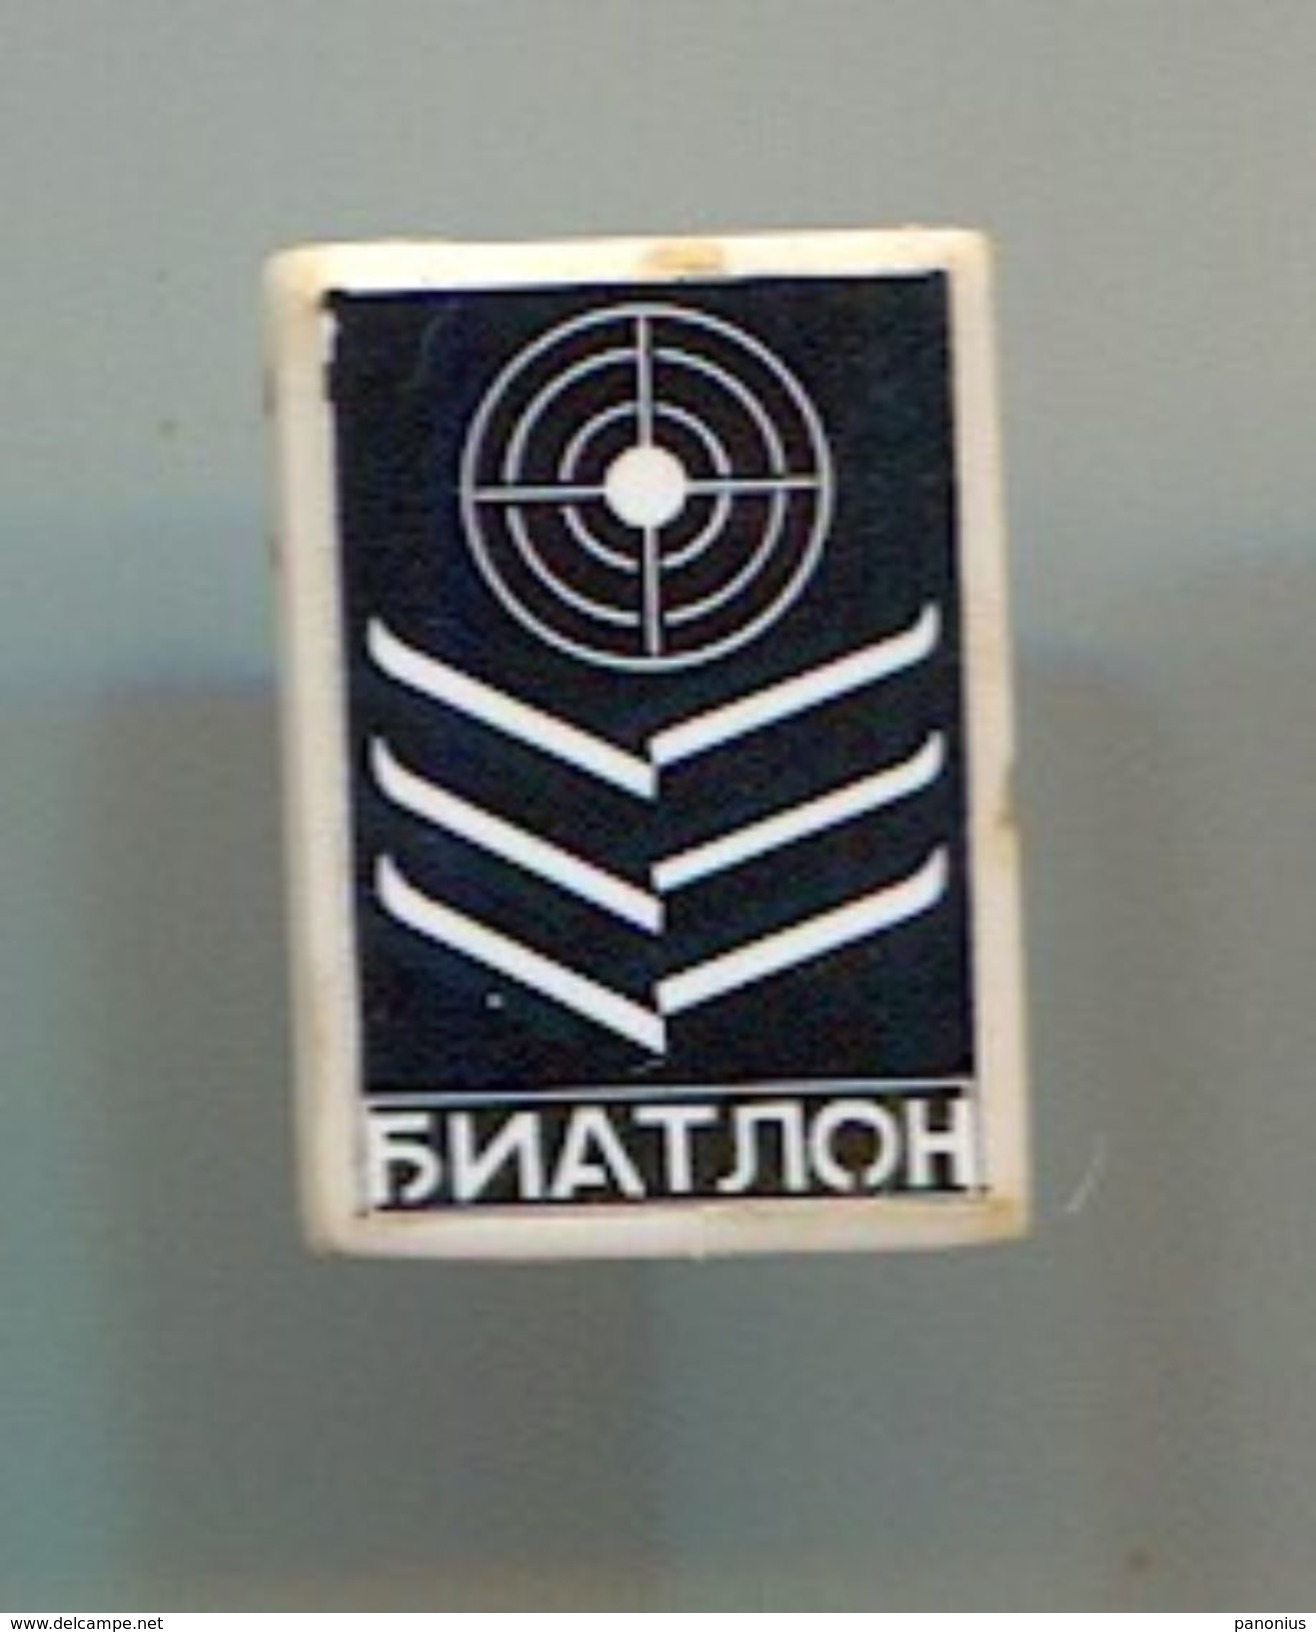 BIATHLON -  Vintage Pin Badge, Abzeichen - Biathlon